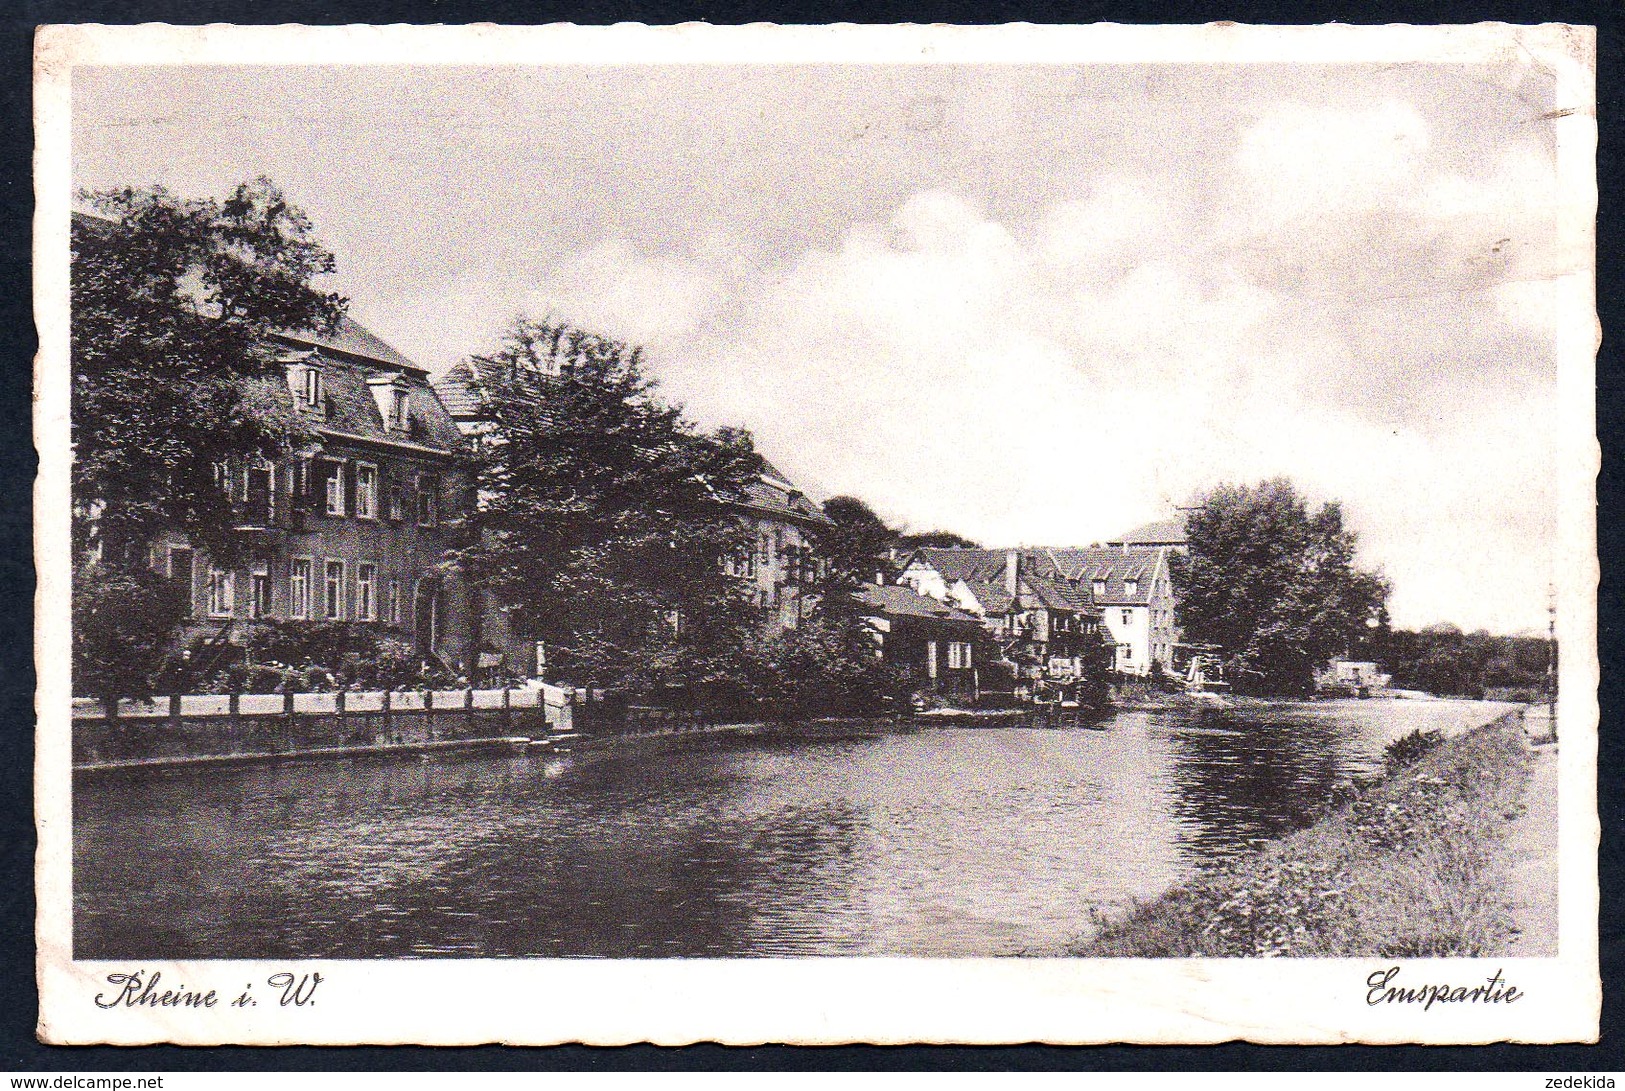 8795 - Alte Ansichtskarte - Rheine - Emspartie - N. Gel Jakob Krapohl - Rheine